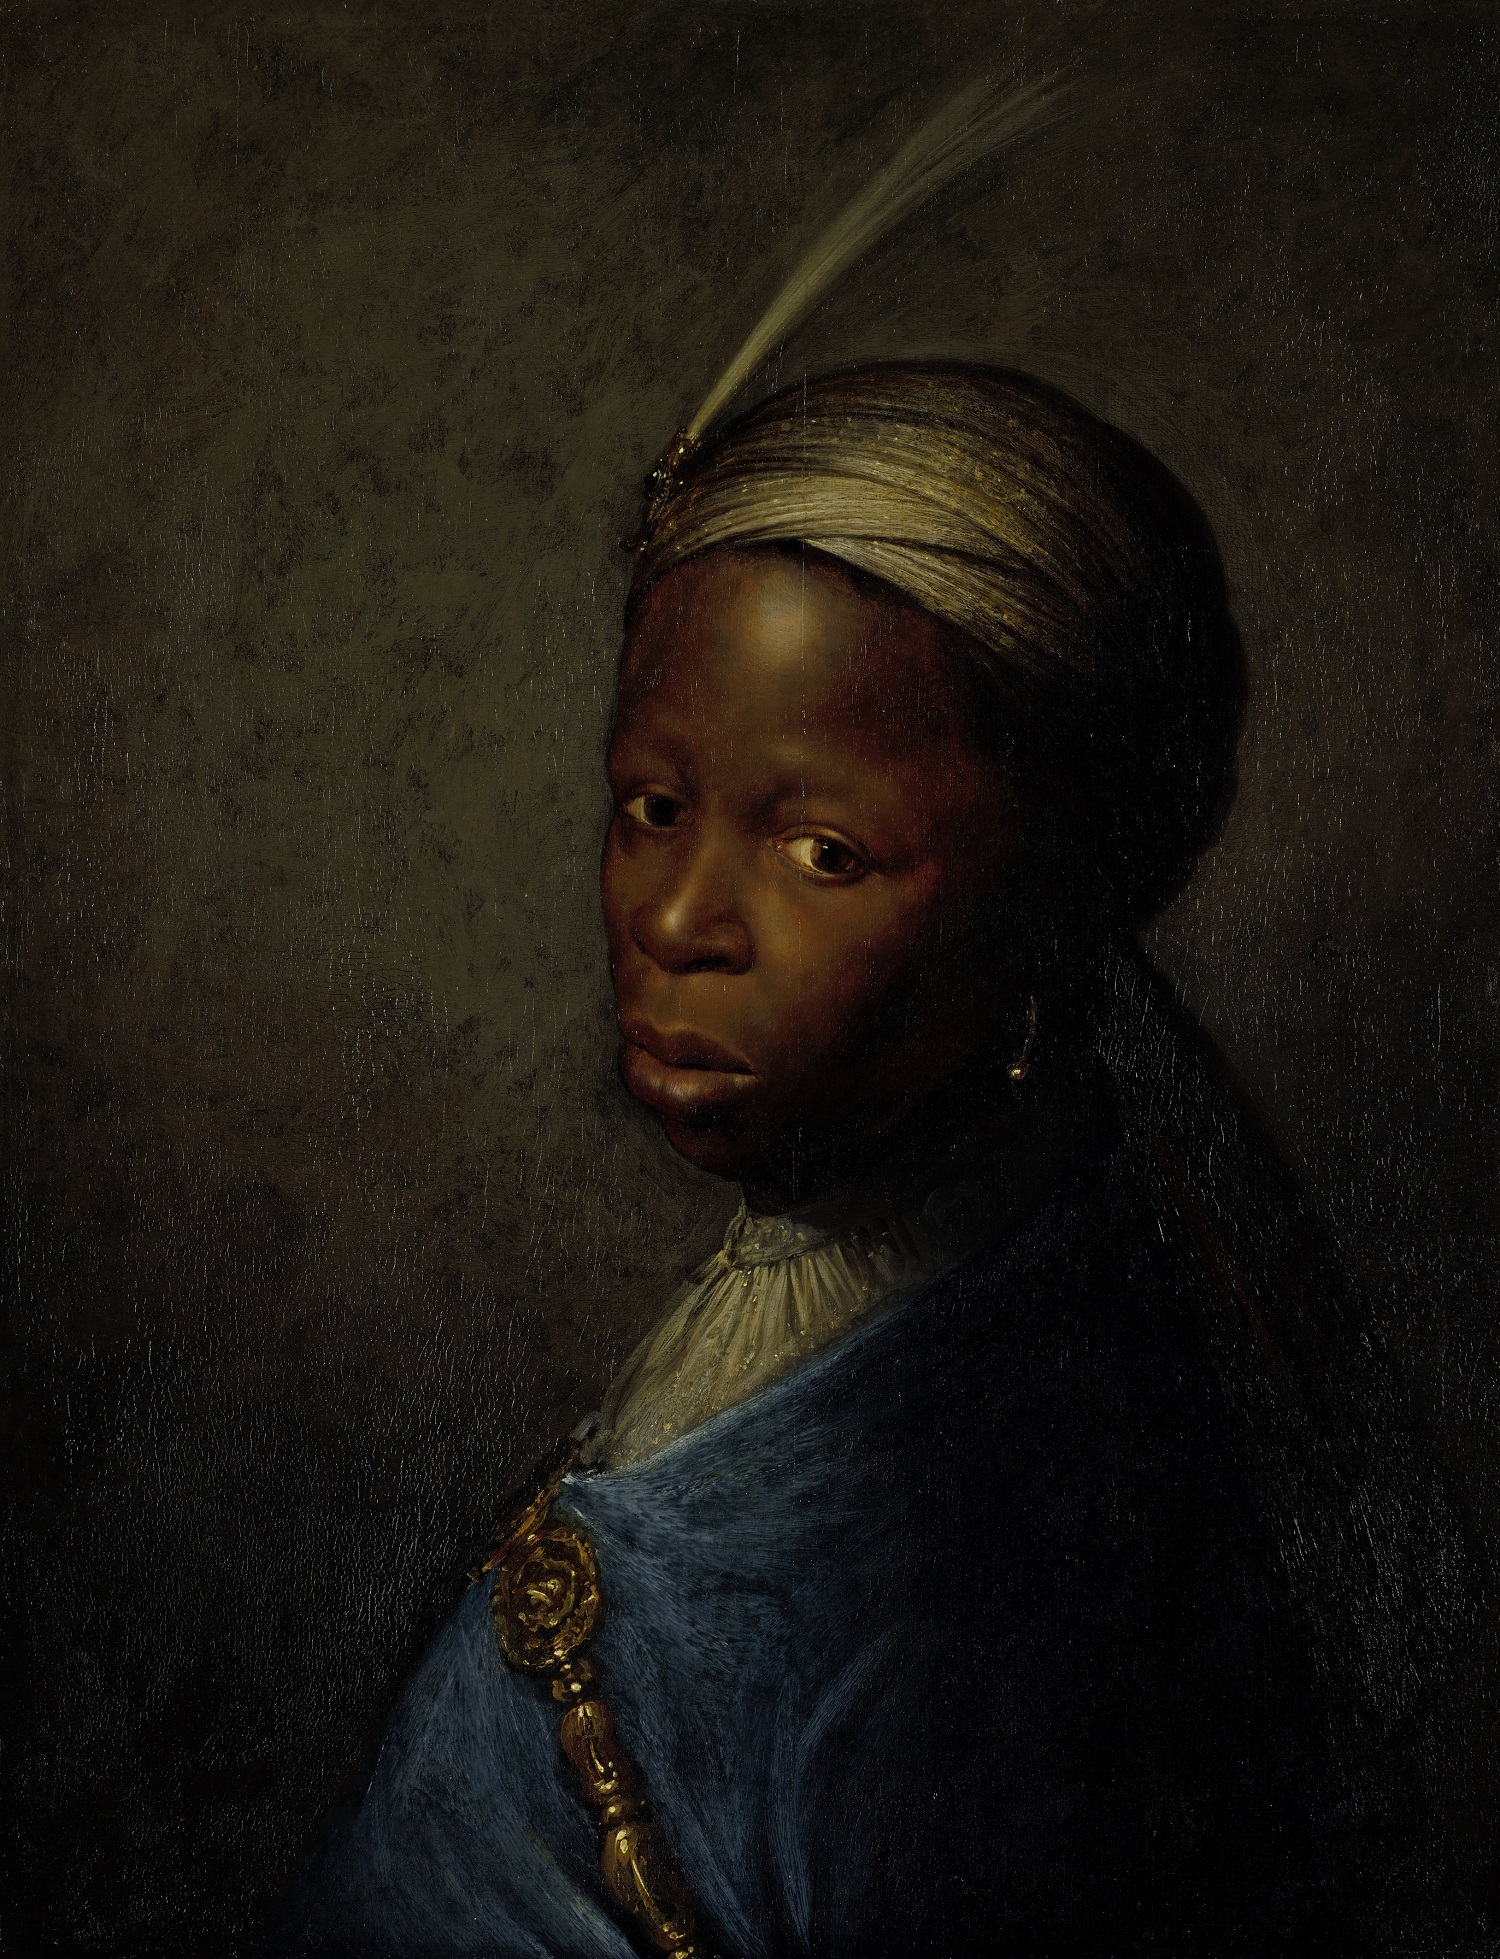 Head of a Boy in a Turban by Gerrit Dou - c. 1635 - 39 x 31 cm Rembrandthuis